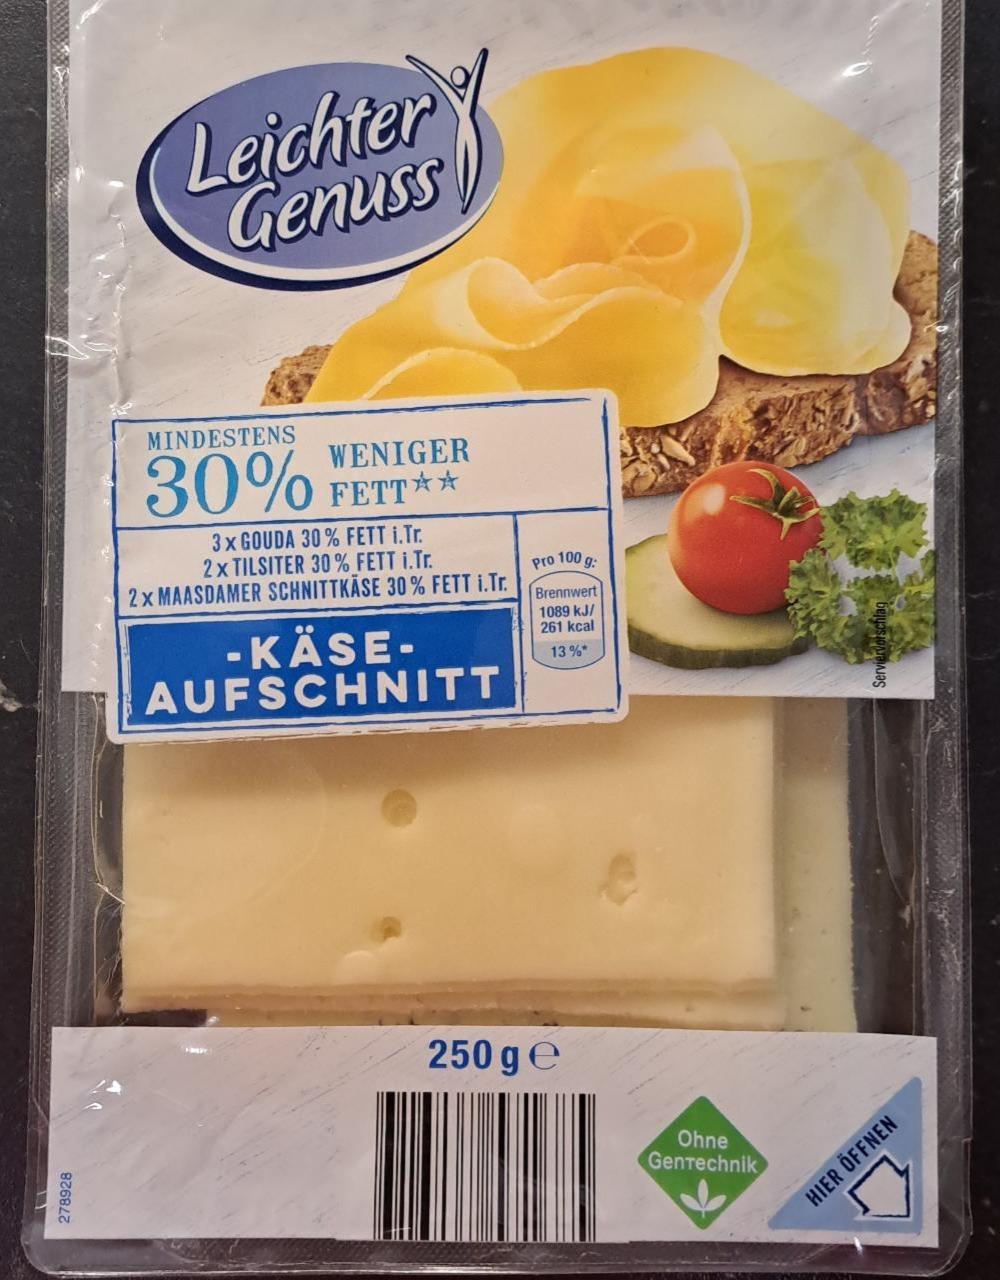 Fotografie - Käse Aufschnitt 30% weniger fett Leichter Genuss